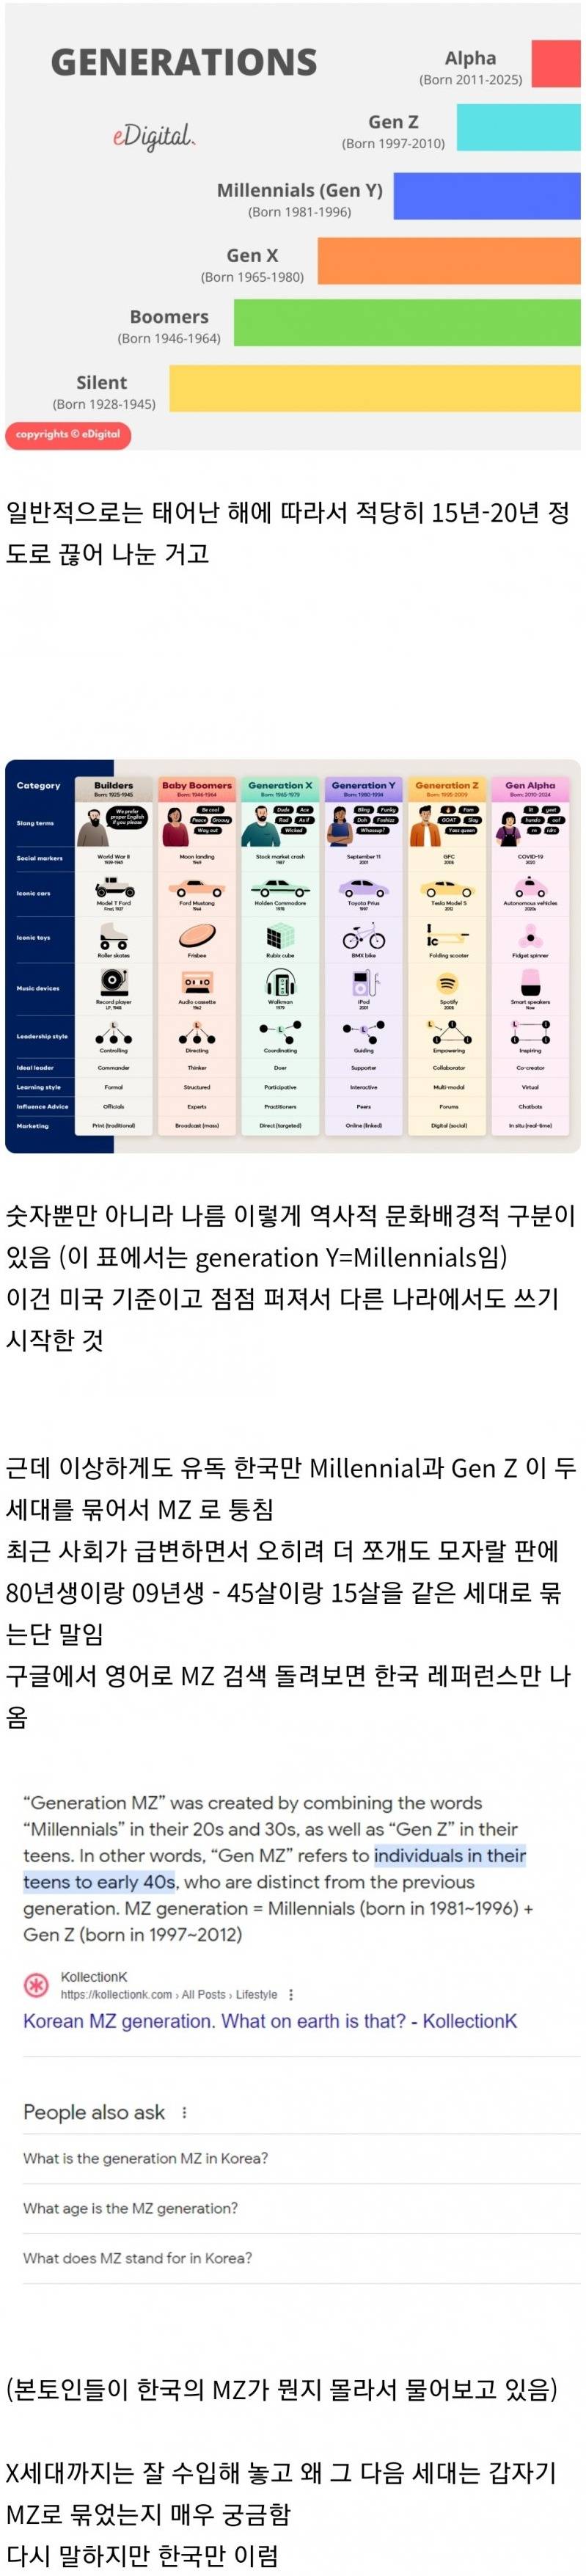 한국에서만 존재하는 세대